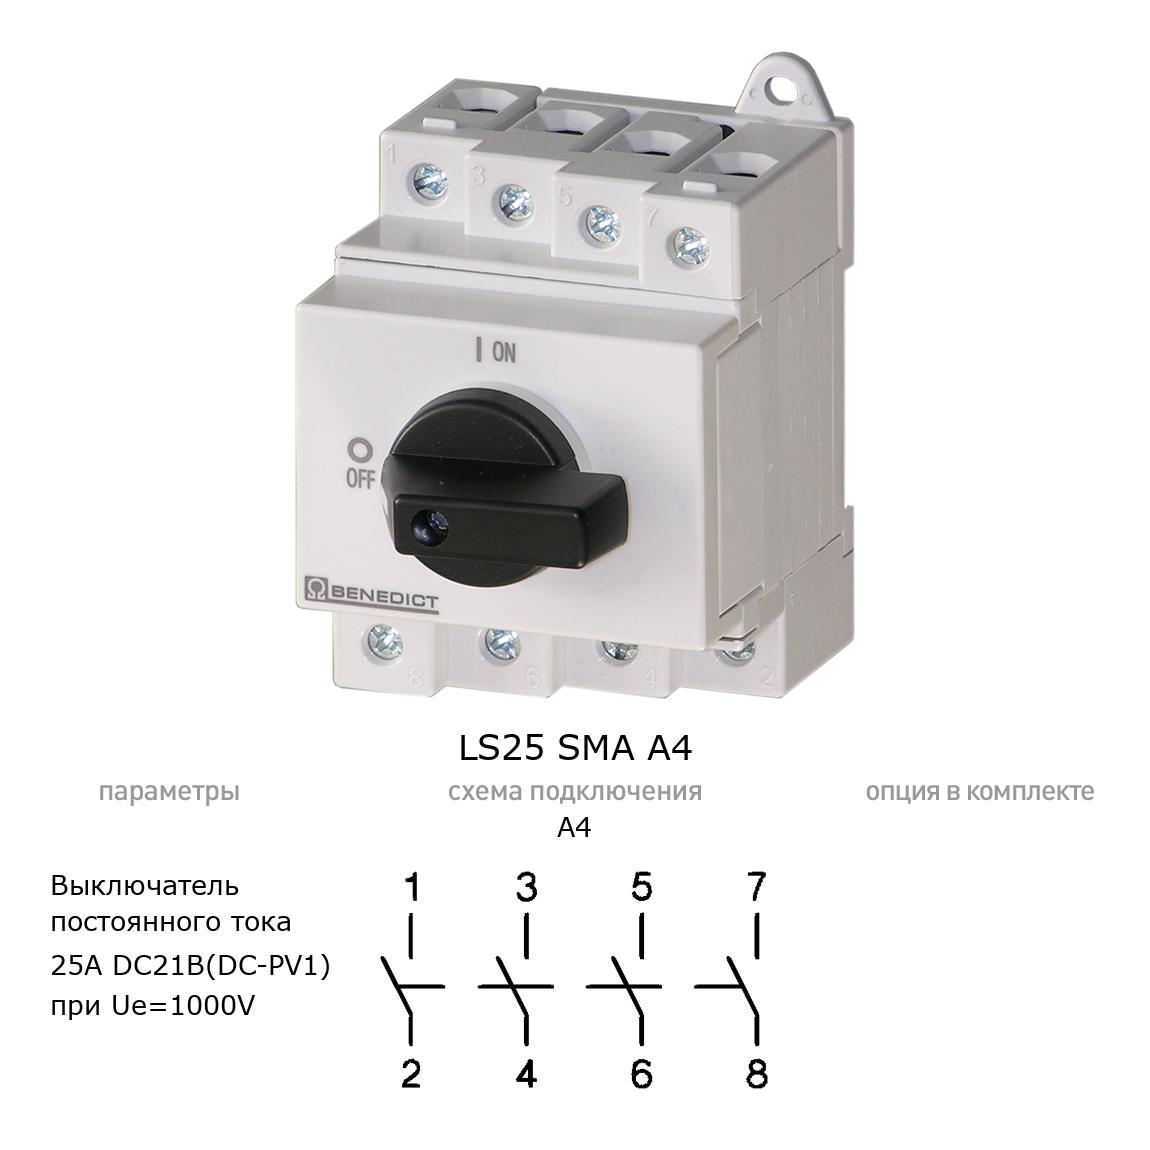 Кулачковый переключатель для постоянного тока (DC) LS25 SMA A4 BENEDICT